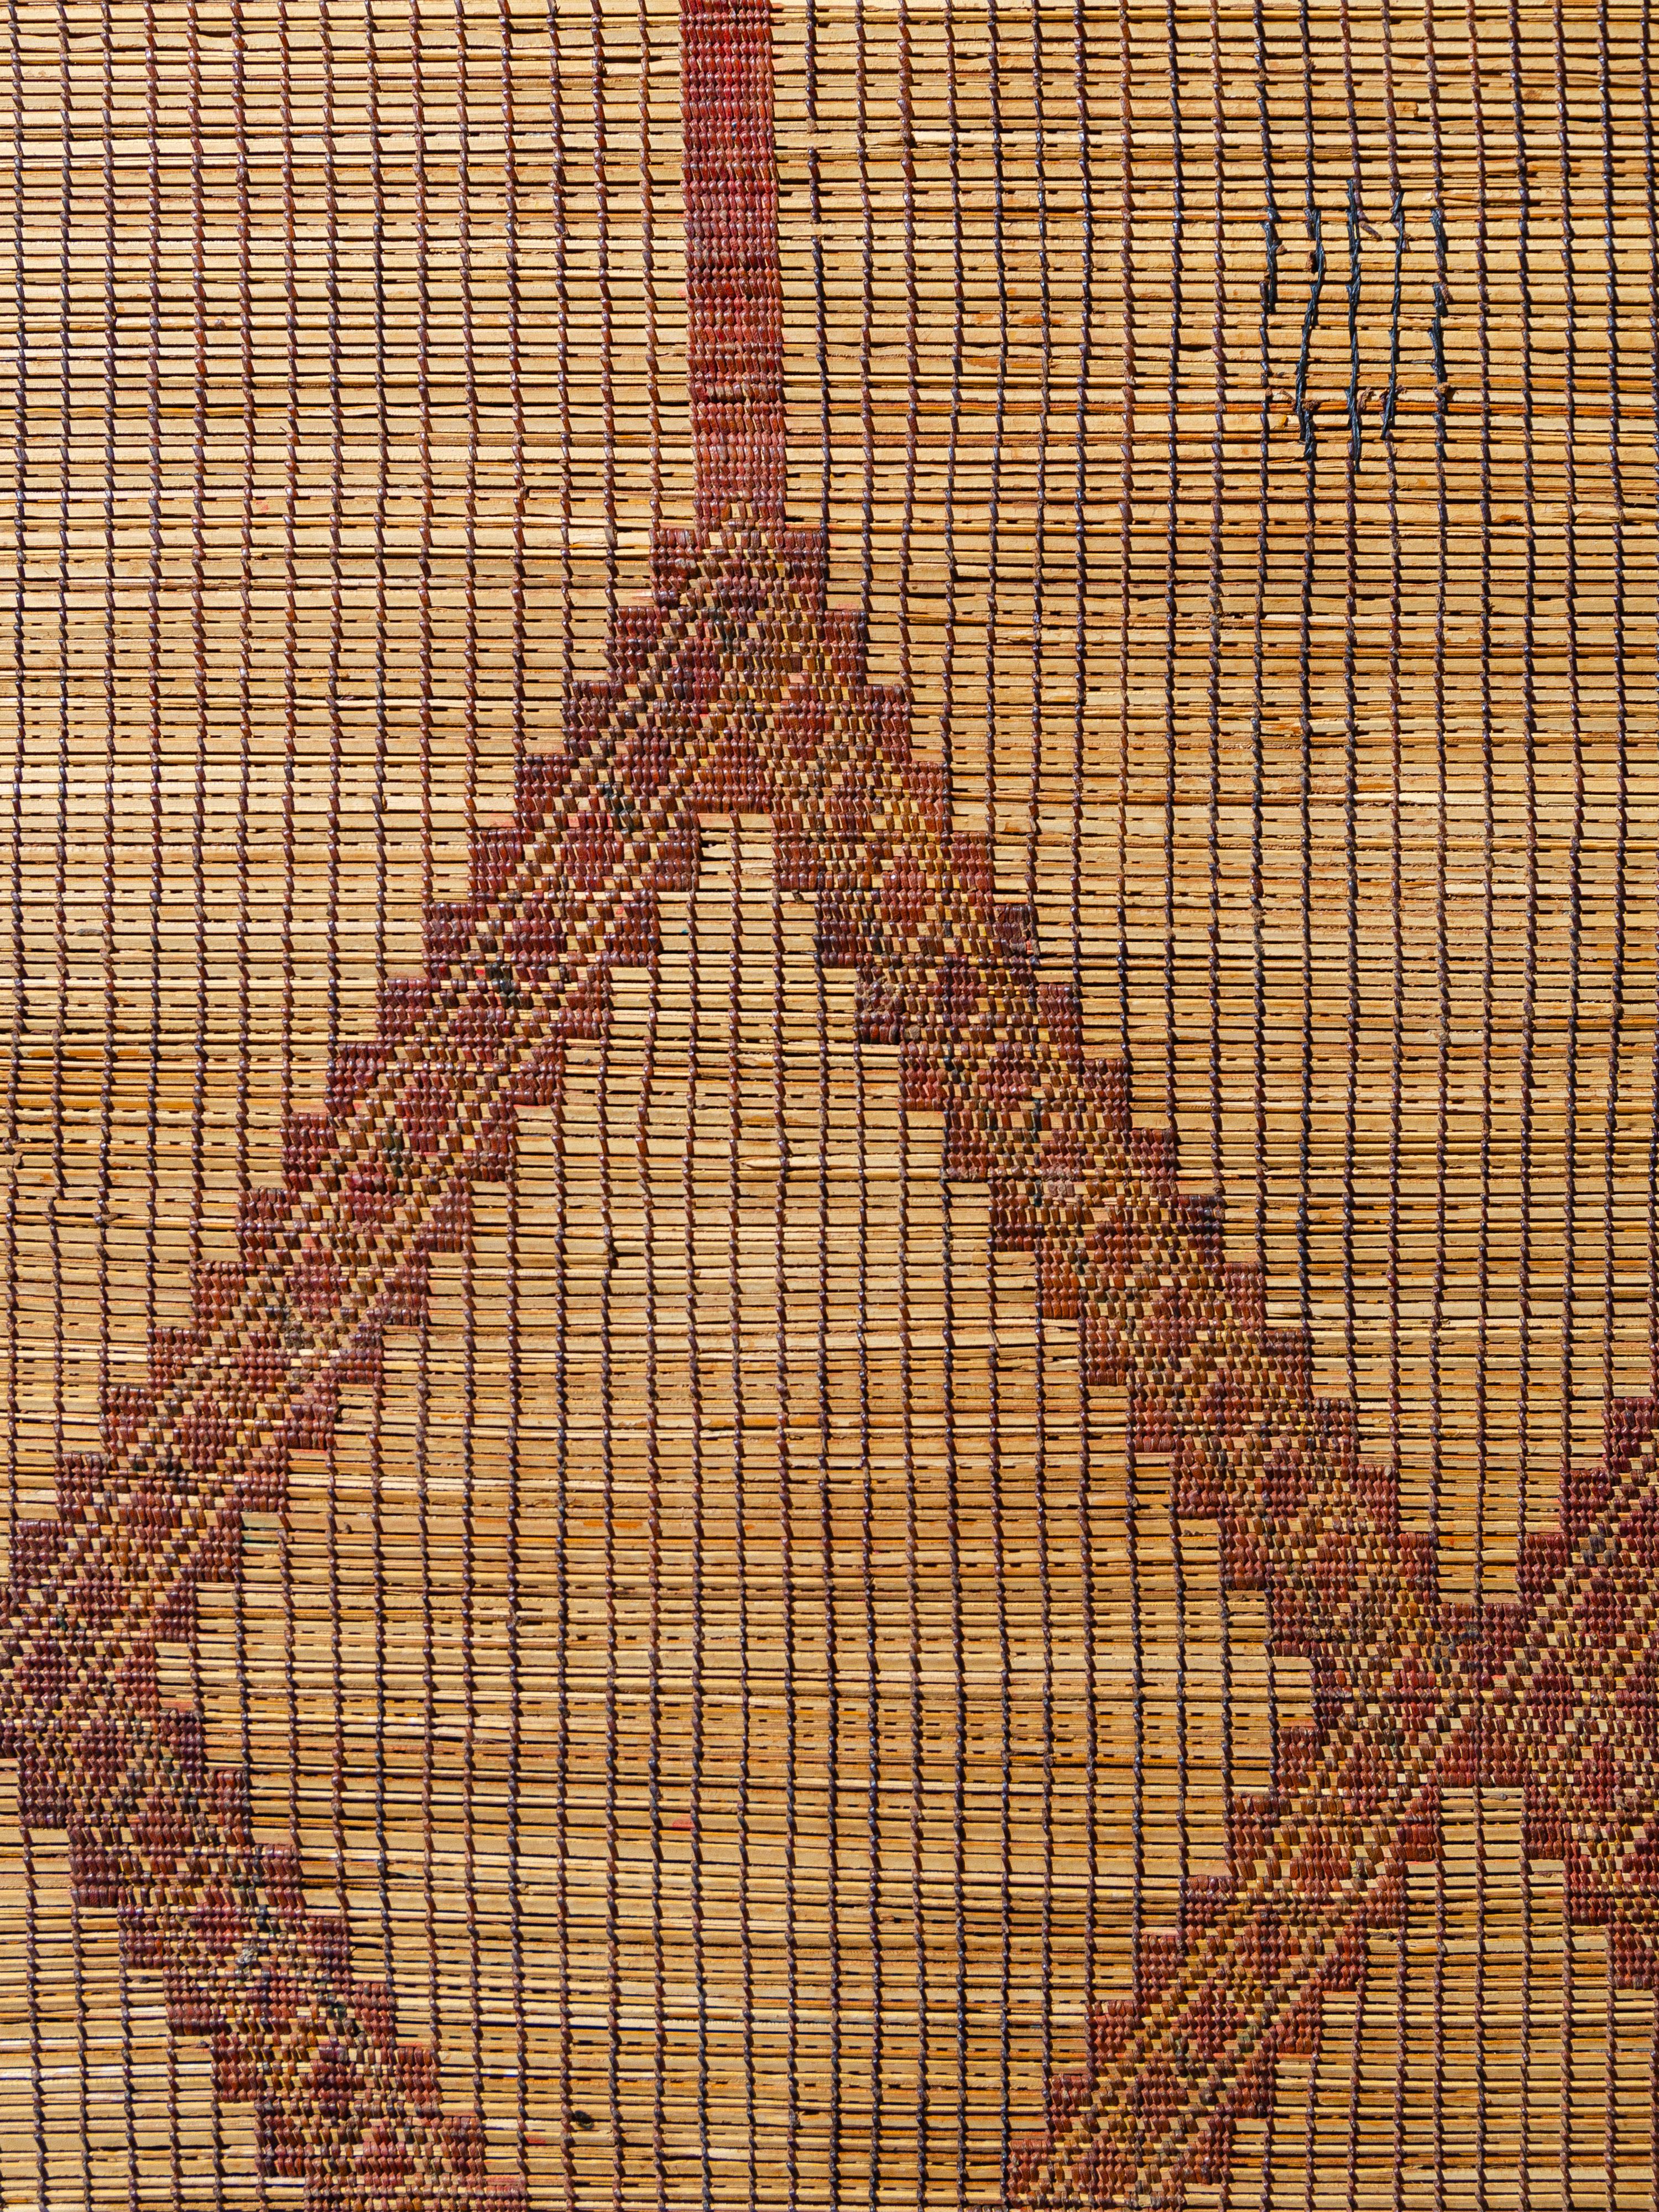 Tissés par les tribus nomades touaregs de Mauritanie avec du roseau de palmier et du cuir, ces tapis offrent une alternative texturale aux revêtements de sol traditionnels en textile tissé. Cette pièce présente un motif en losange proéminent plutôt